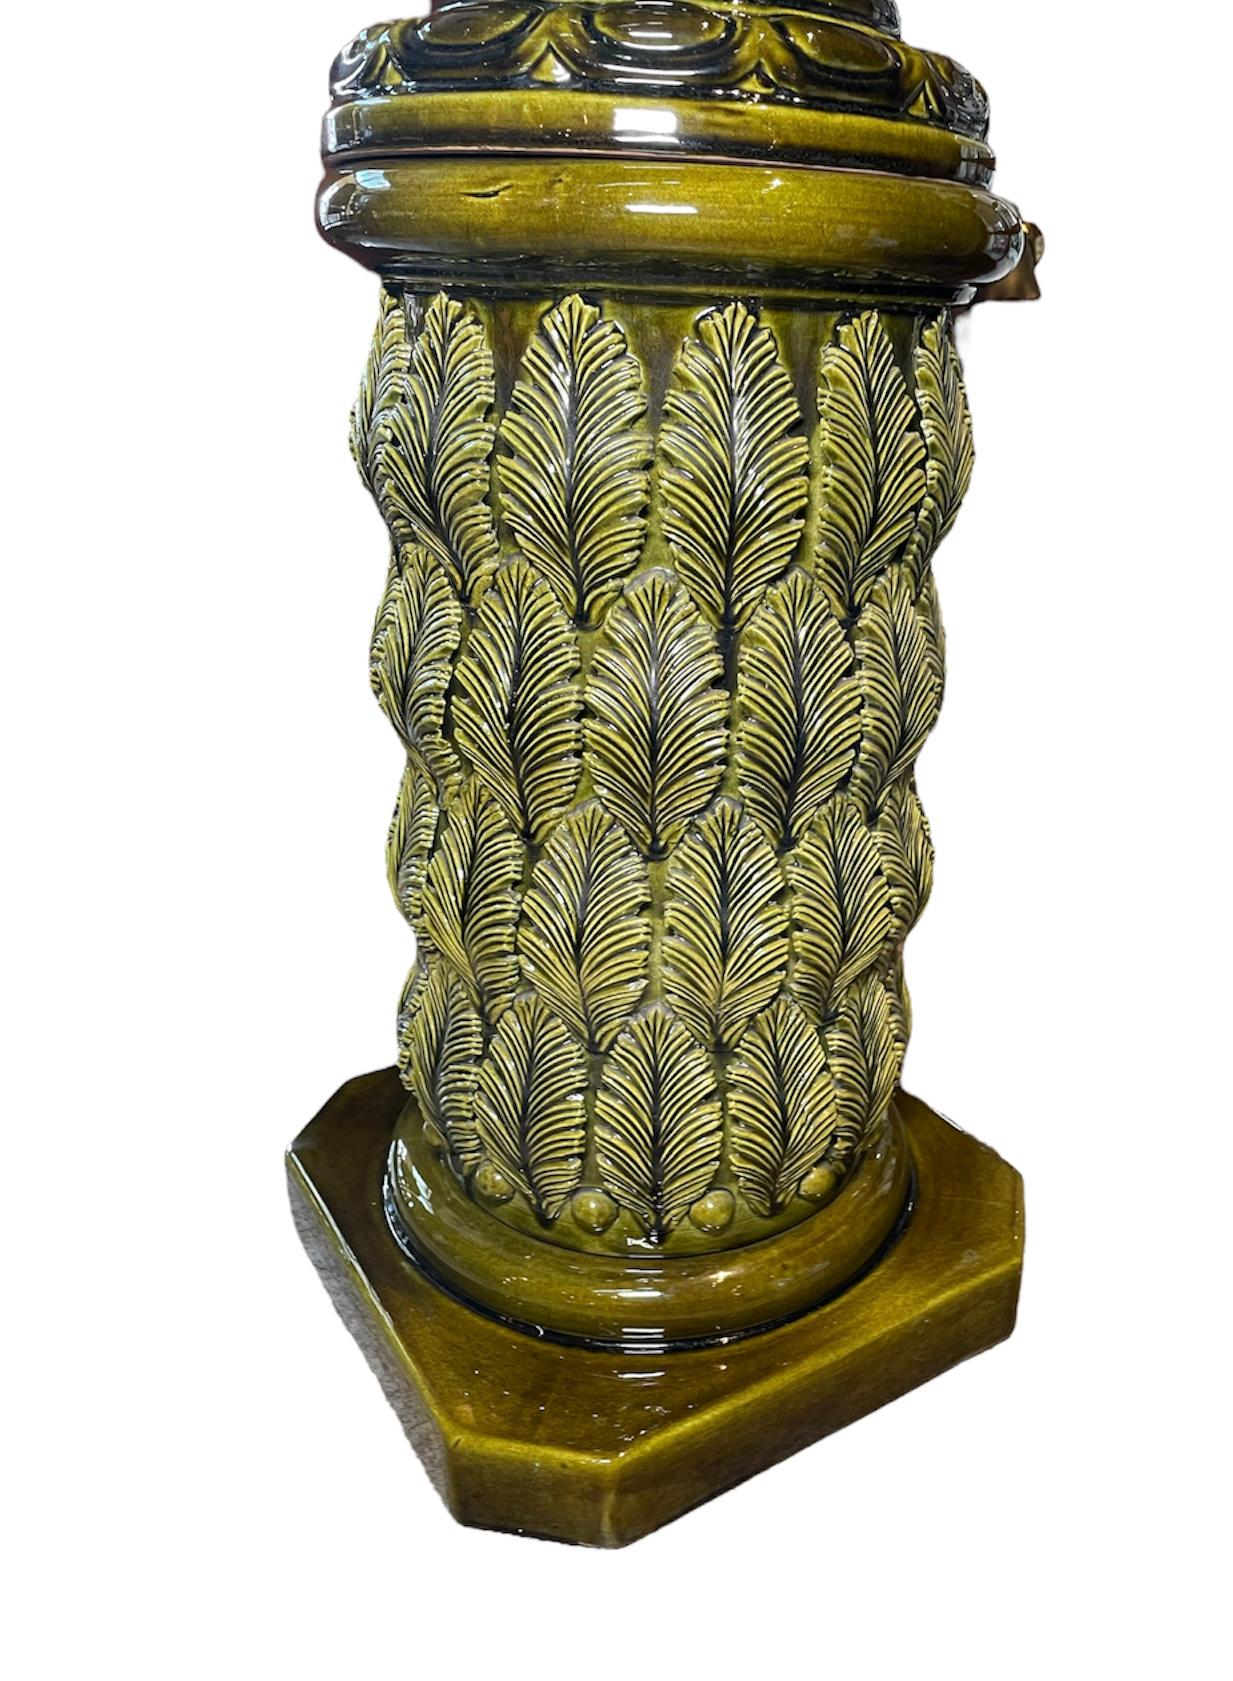 Dies ist eine olivgrüne Farbe Satz von großen Spanier Cerámicas Bondia Jardiniere und Sockel. Die Jardiniere ist mit einem Relief von Schwänen im Empire-Stil mit offenen Federn um eine glockenförmige, auf dem Kopf stehende Vase dekoriert. Der Sockel